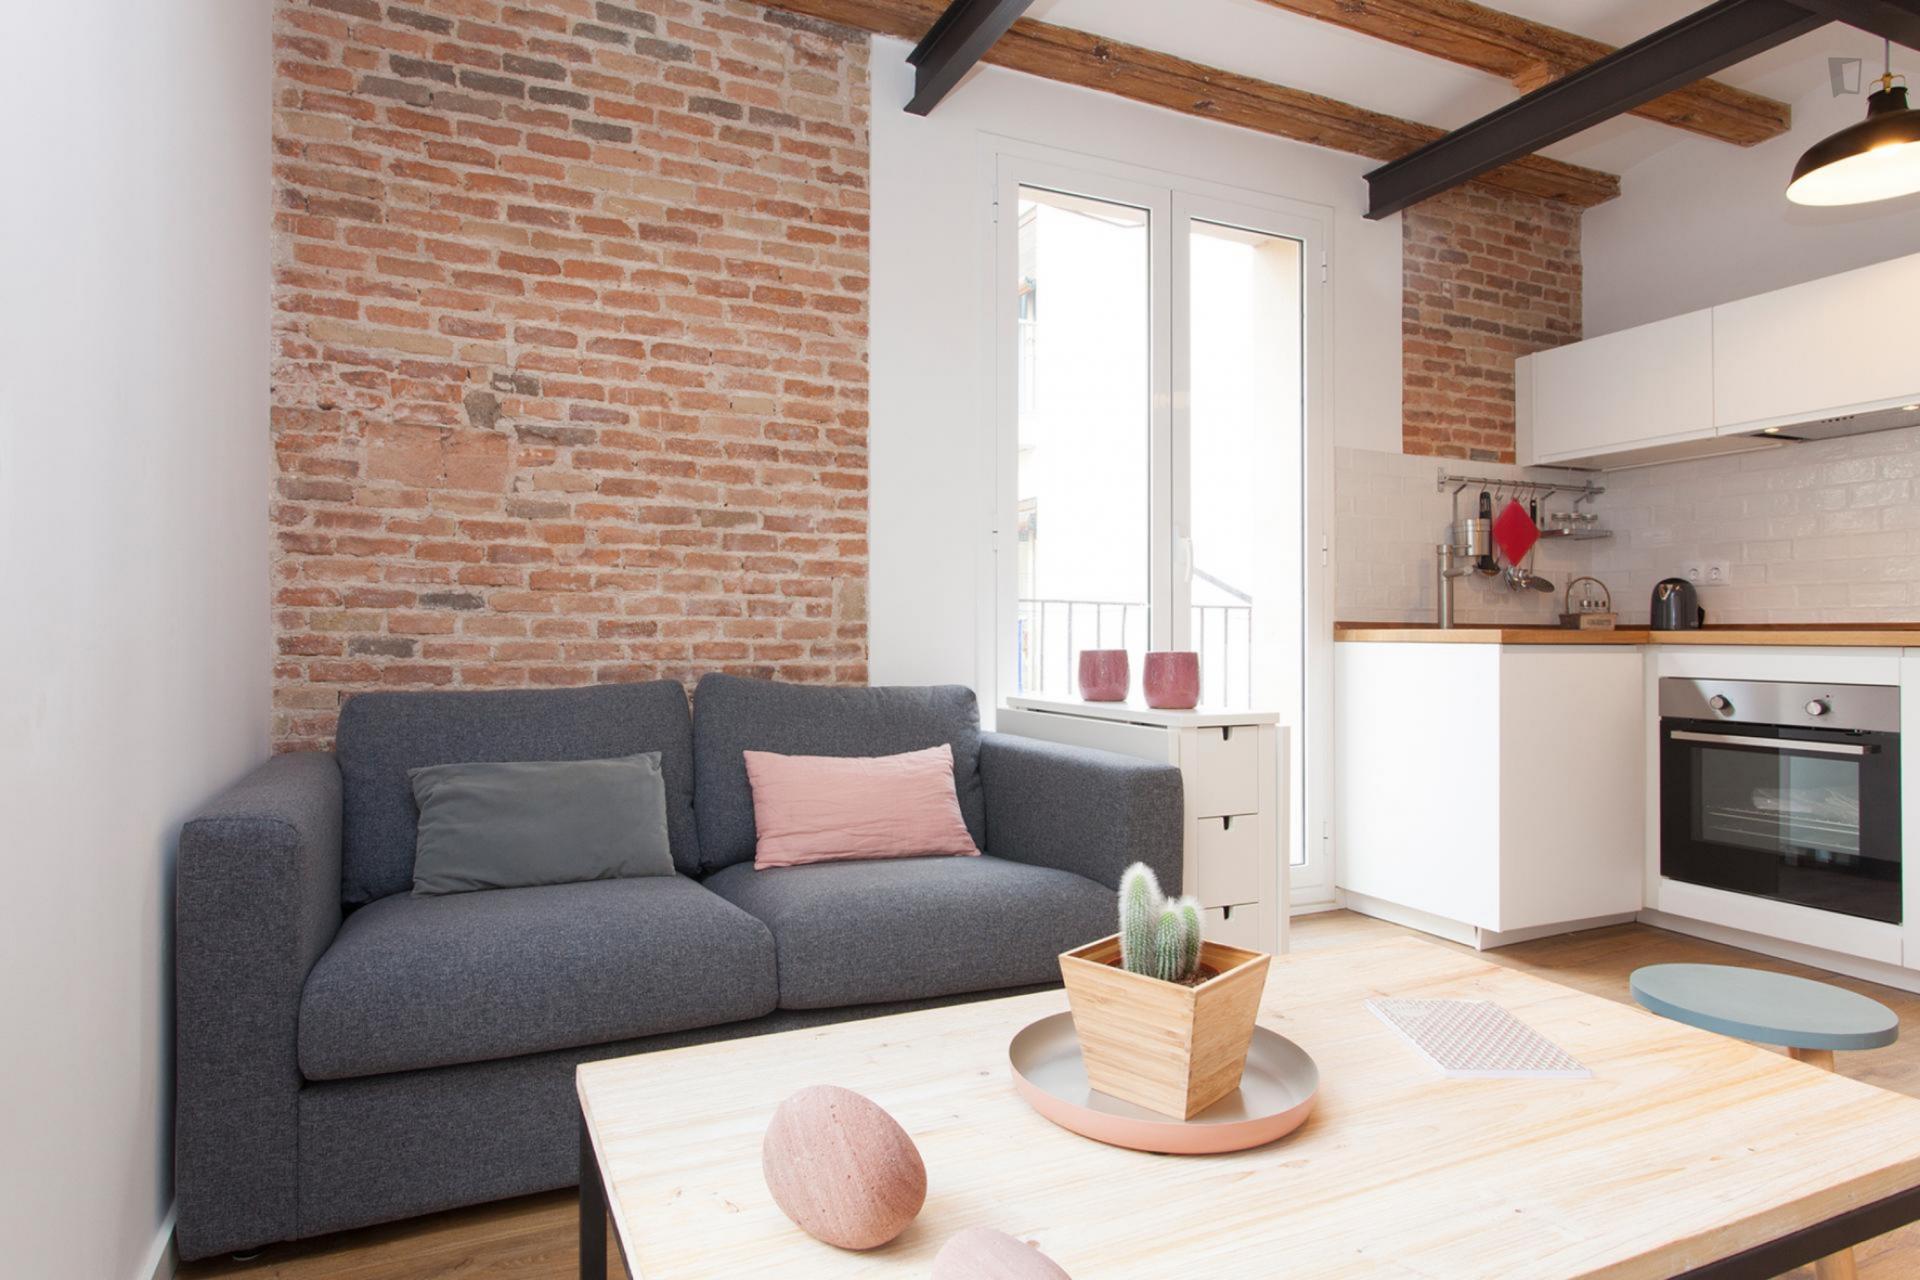 Carretes - Precioso apartamento amueblado en Barcelona